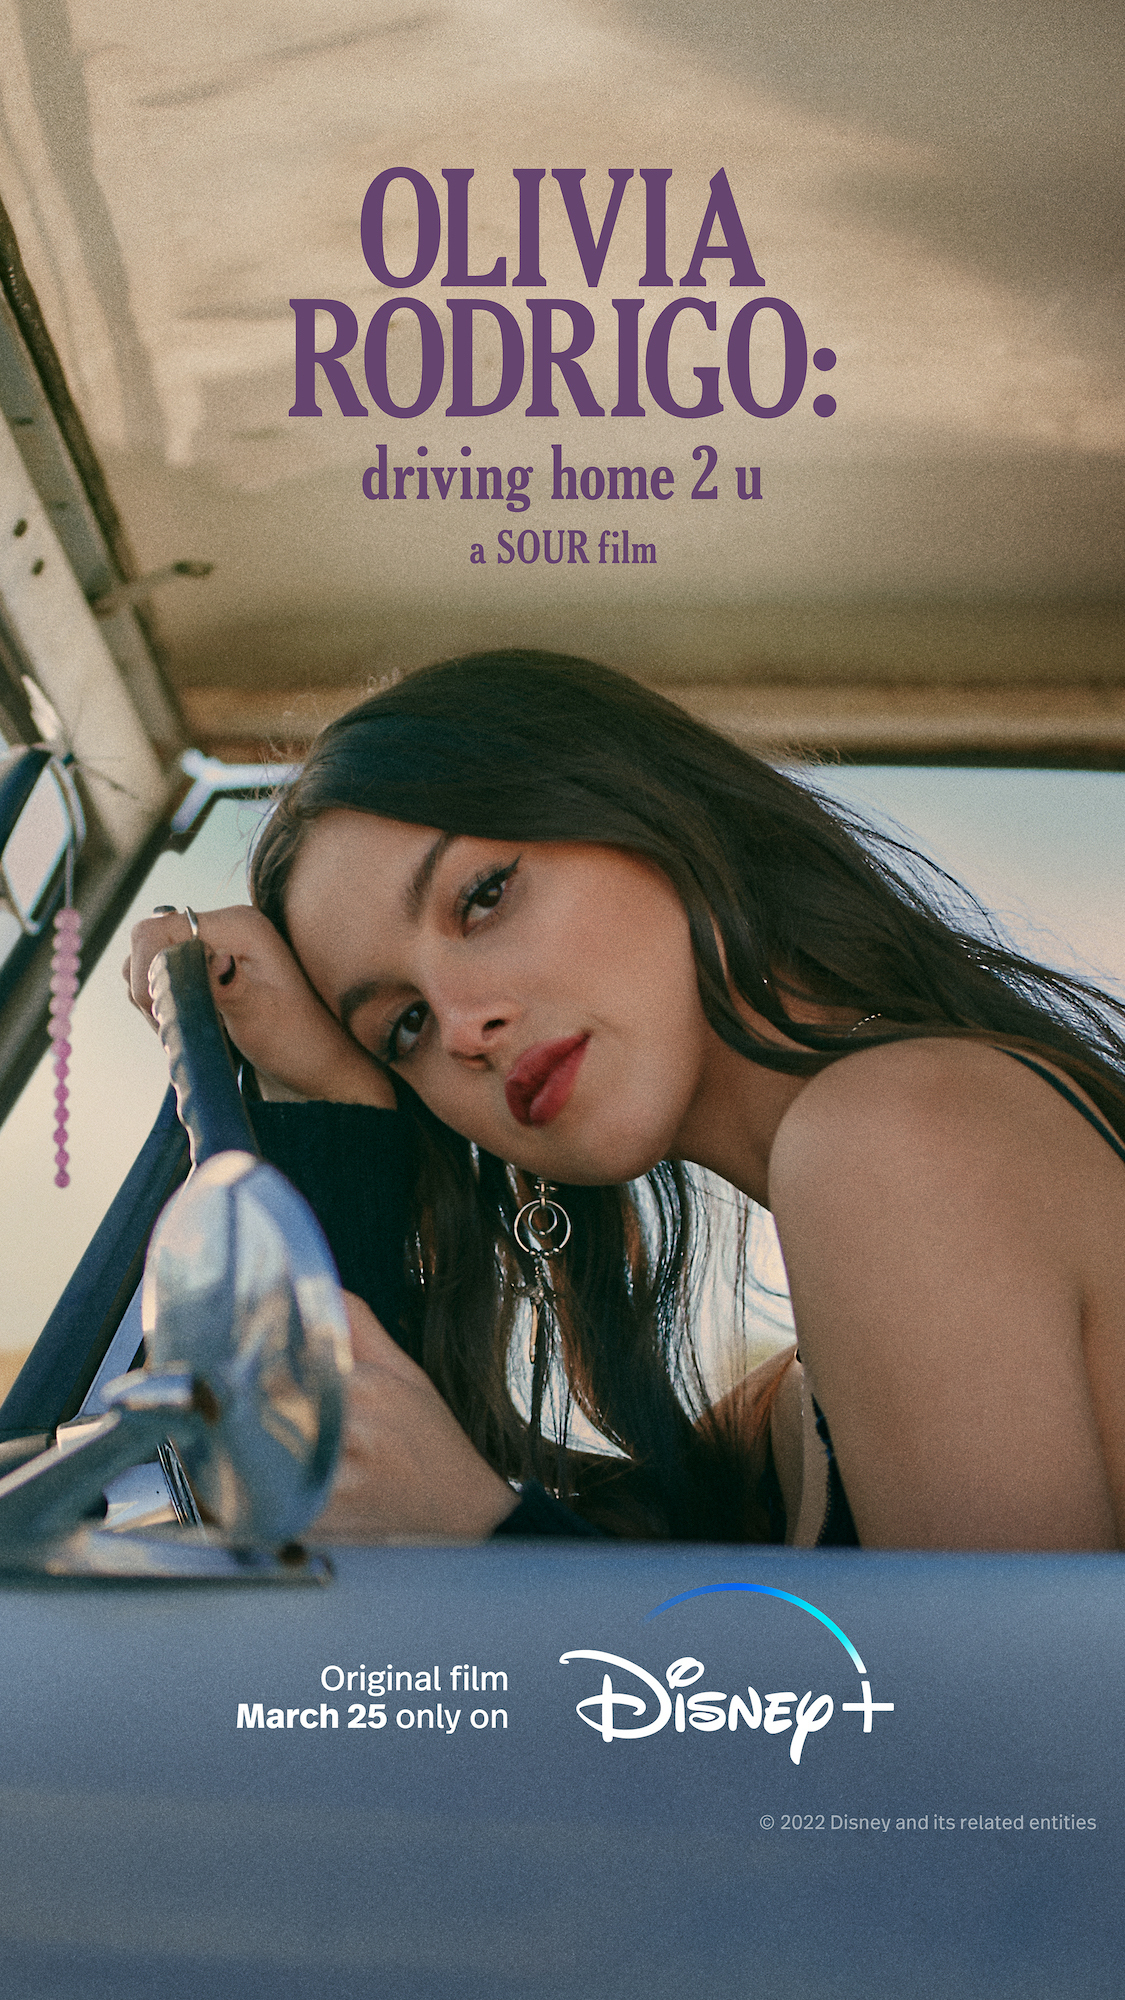 ดูหนังออนไลน์ฟรี Olivia Rodrigo Driving Home 2 U (2022) โอลิเวีย โรดริโก ไดรฟวิ่งโฮม ทู ยู (ซับไทย)